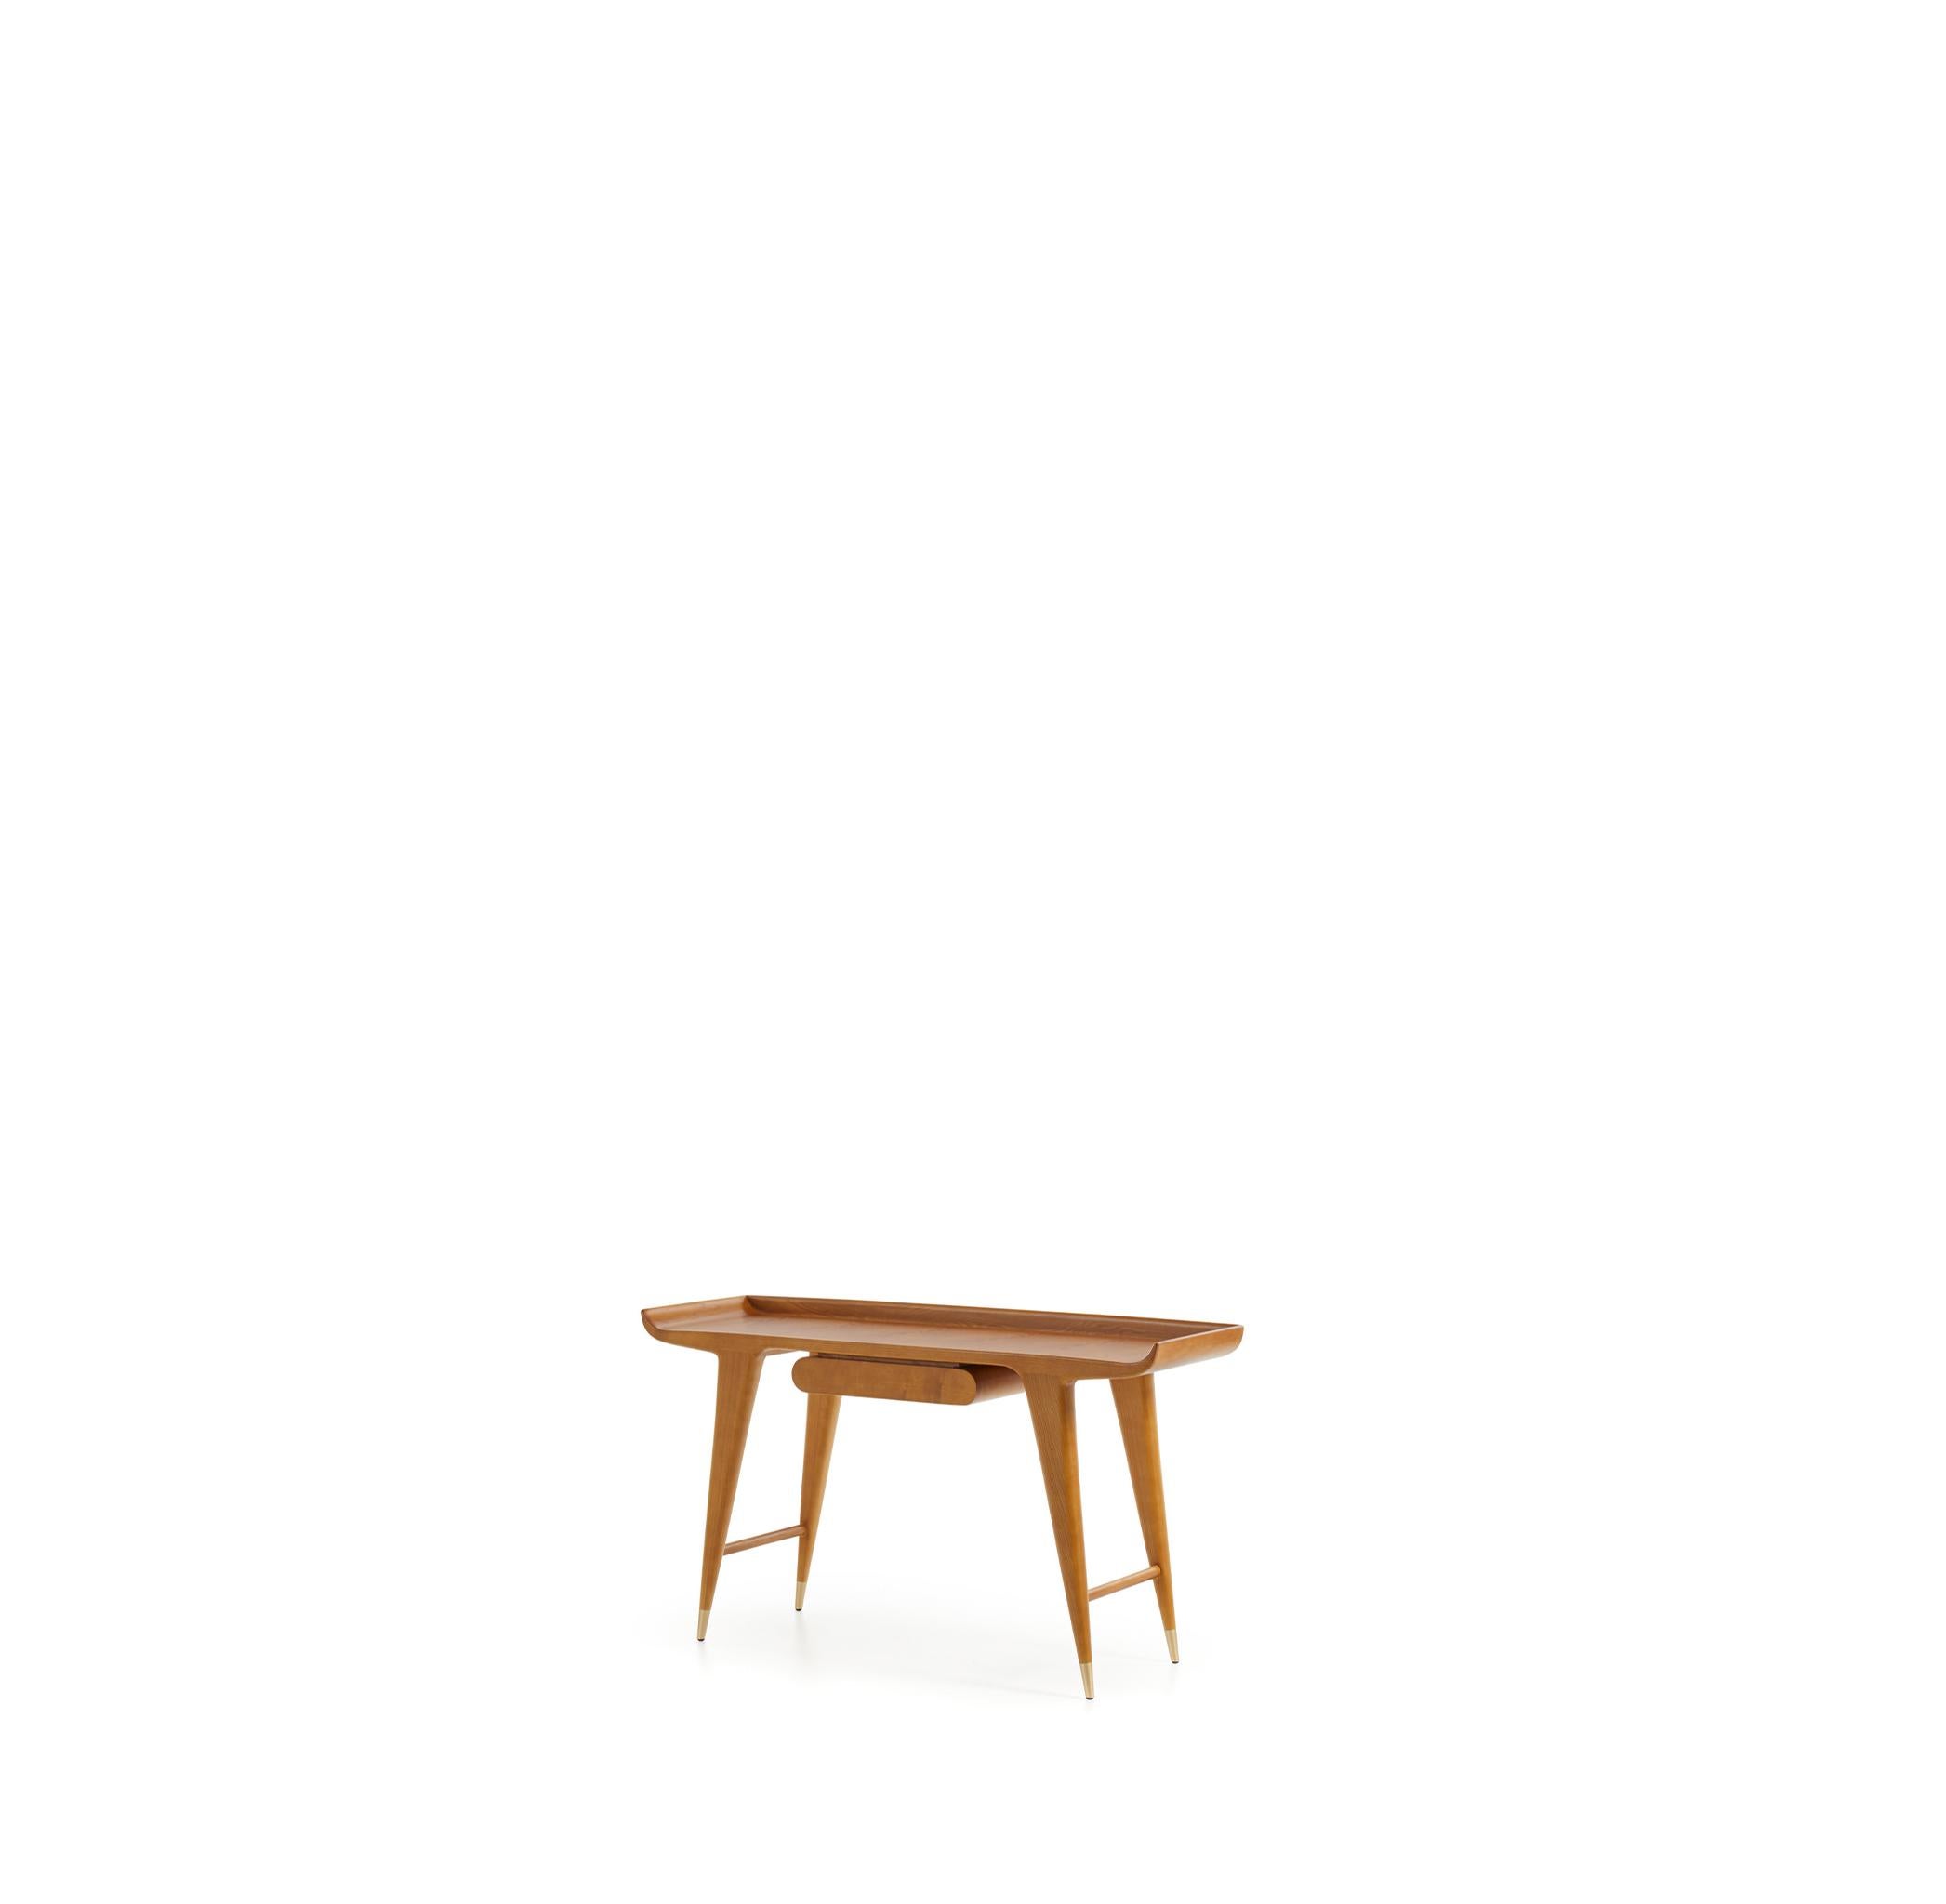 D.847.1 Table Console de Gio Ponti - Fabriquée en Italie exclusivement par Molteni&C

Un savoir-faire artisanal a donné à cette magnifique table console une nouvelle vie, inspirée de son design italien original d'il y a 70 ans. La pièce est